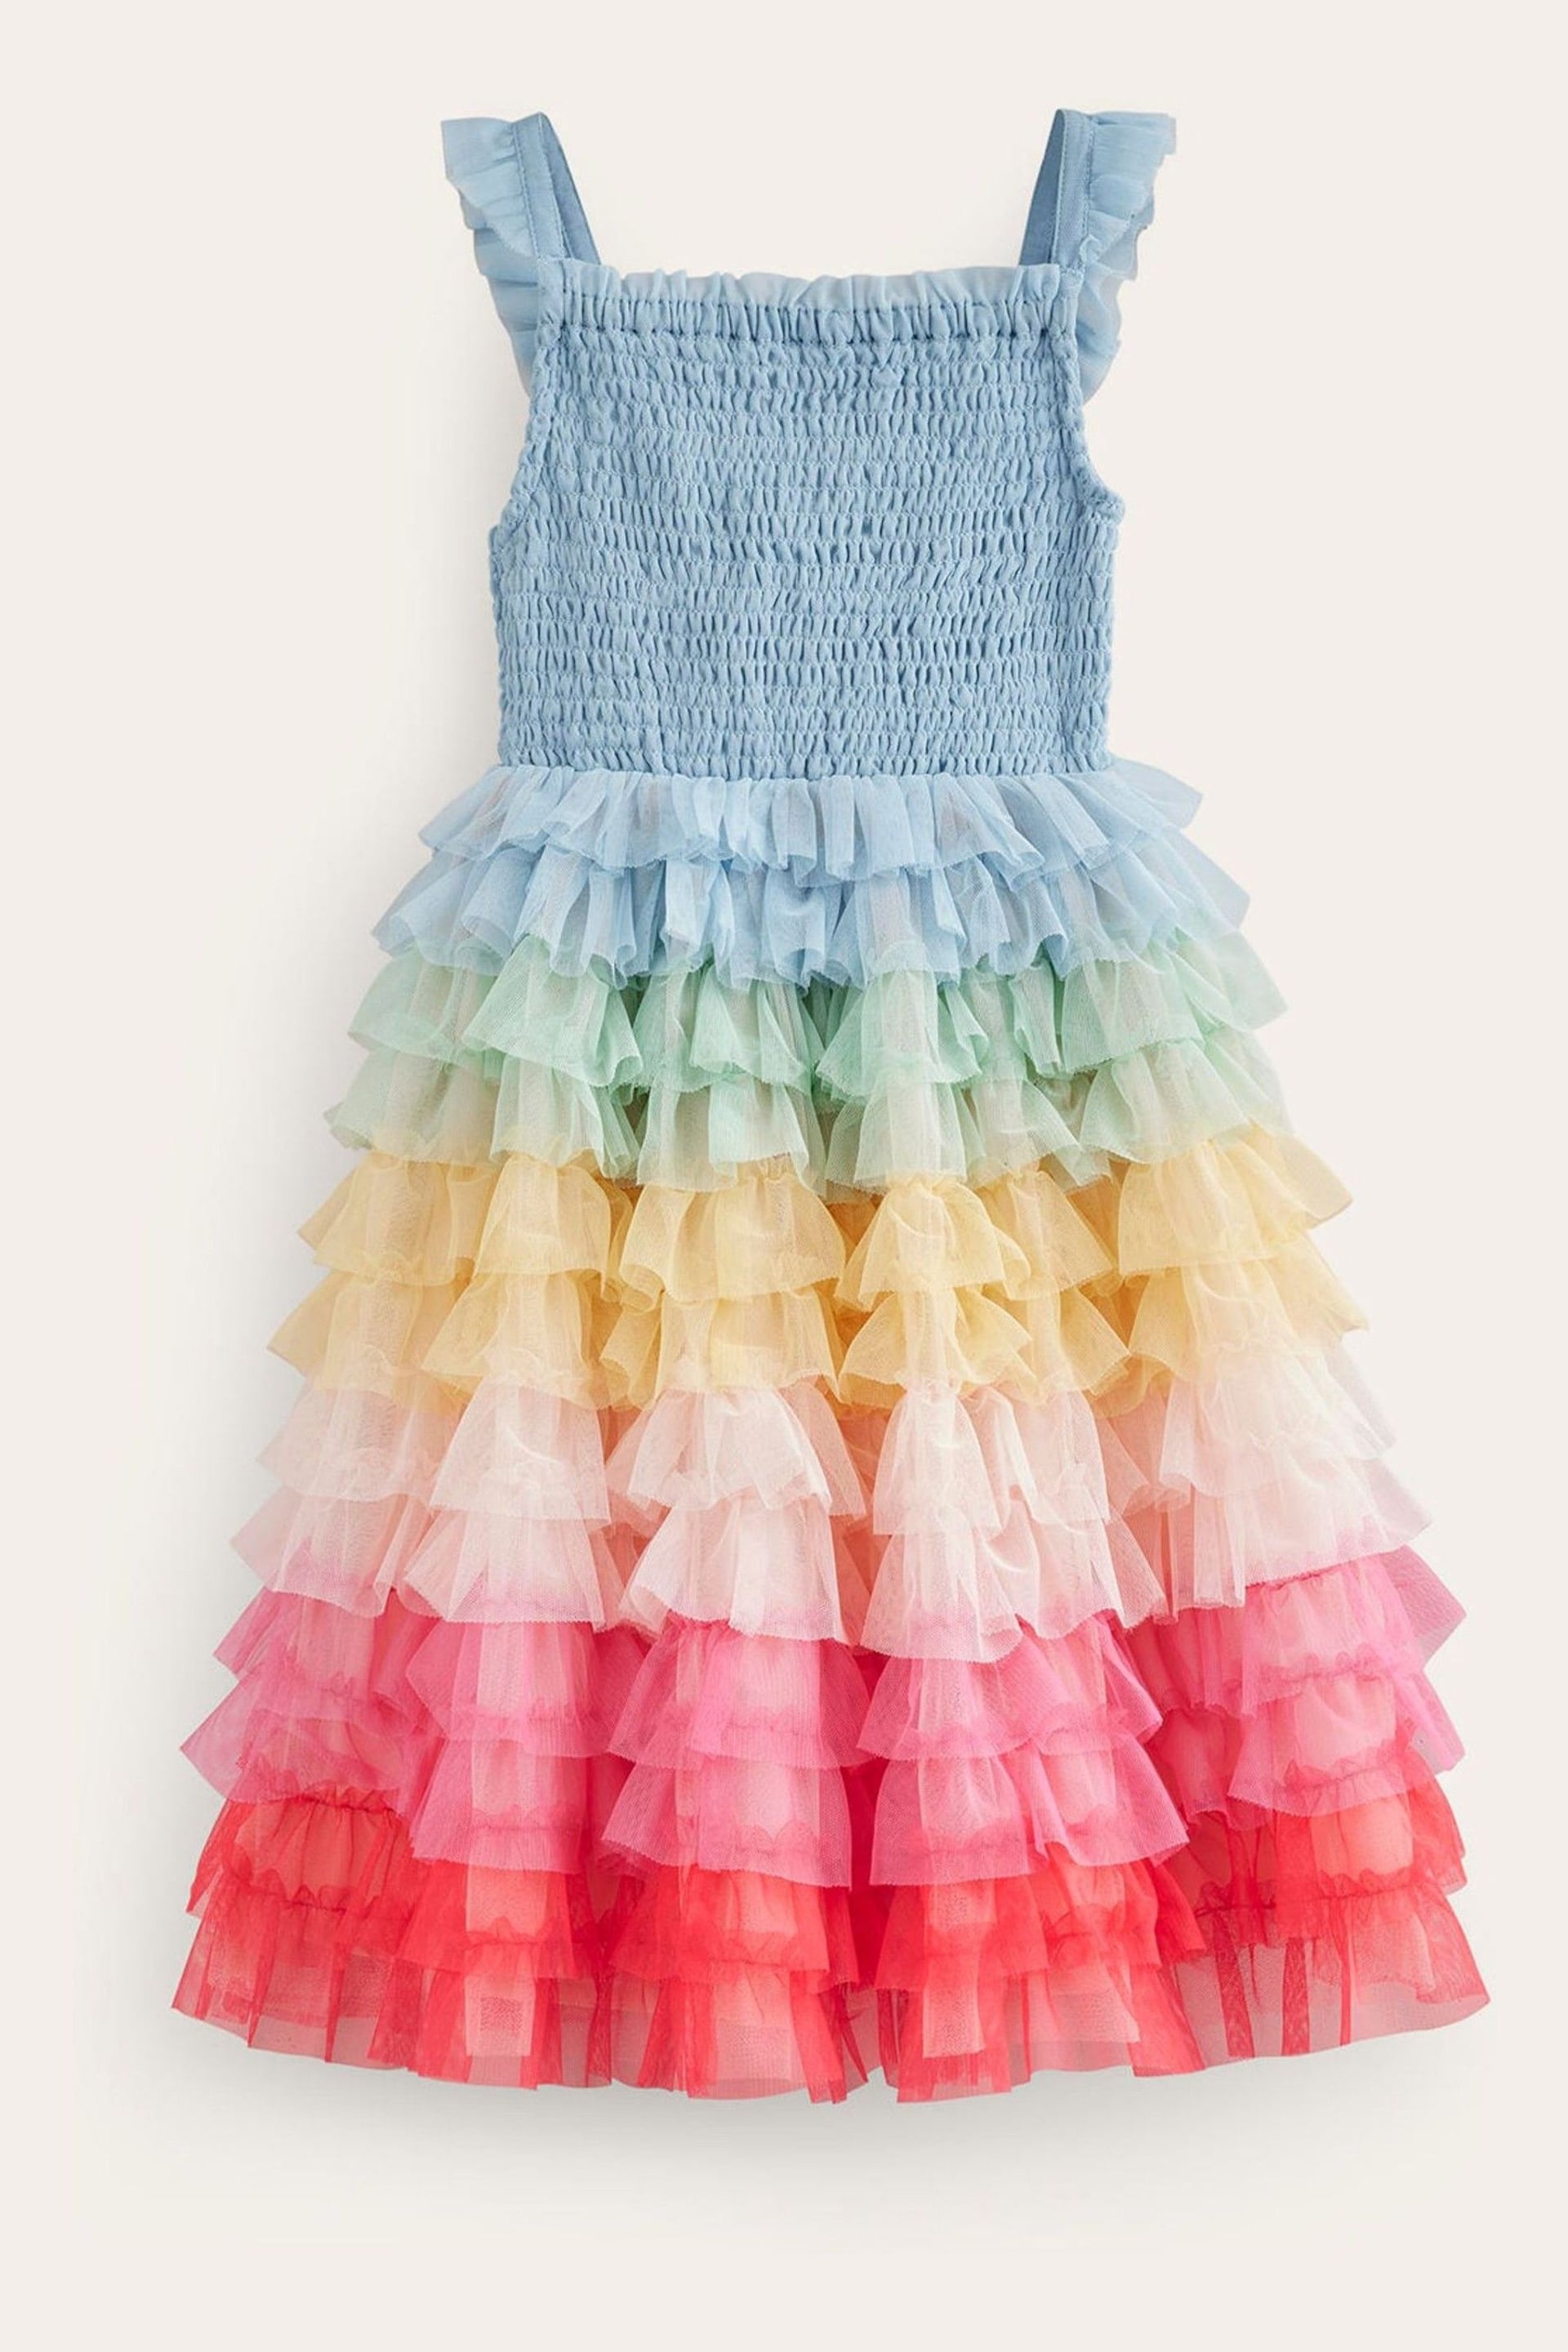 Boden Blue Rainbow Skirt Tulle Dress - Image 1 of 4